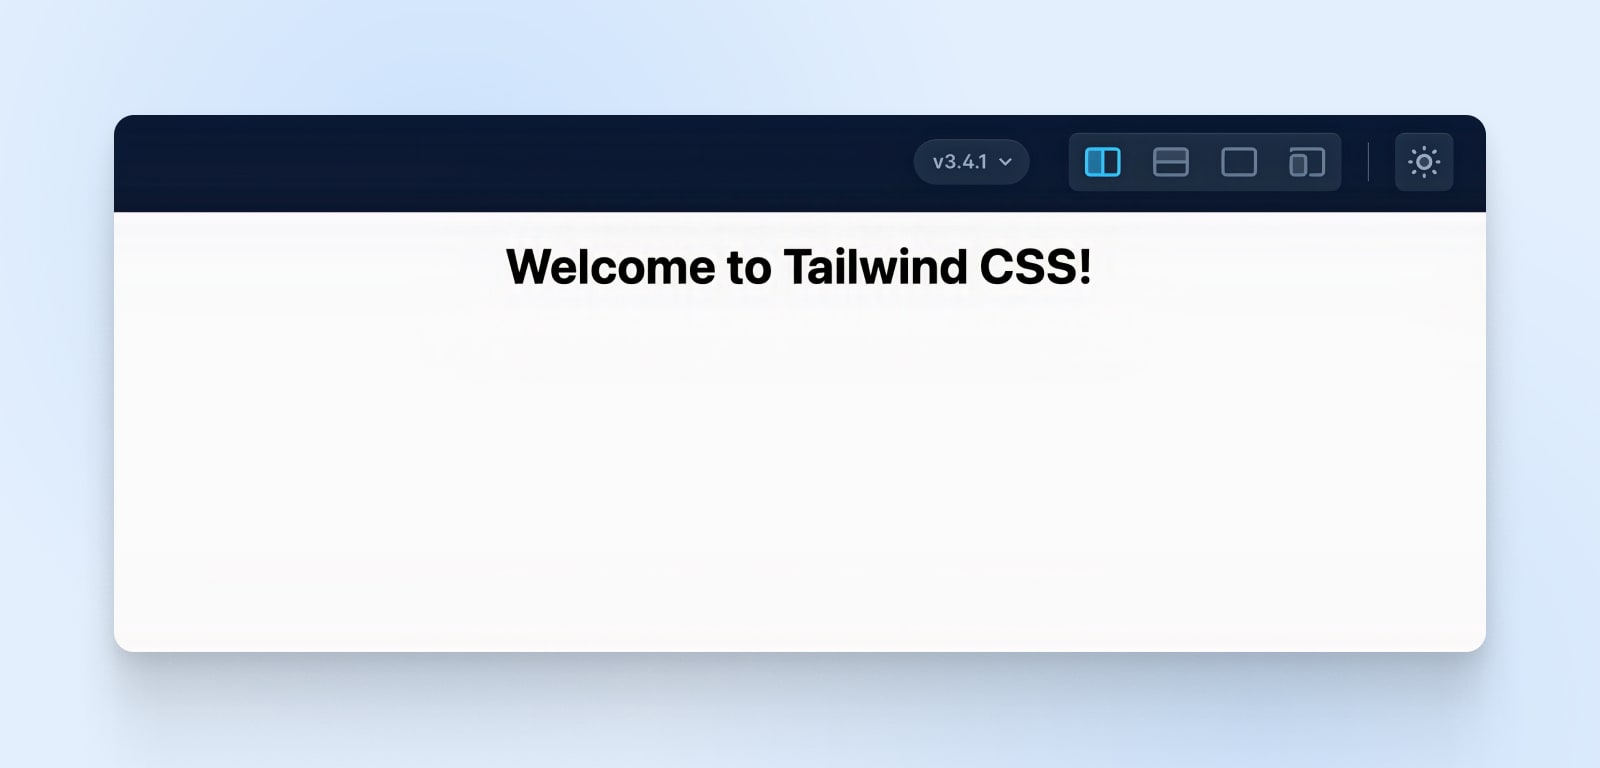 "Welcome to Tailwind CSS!" encabezado en negrita.